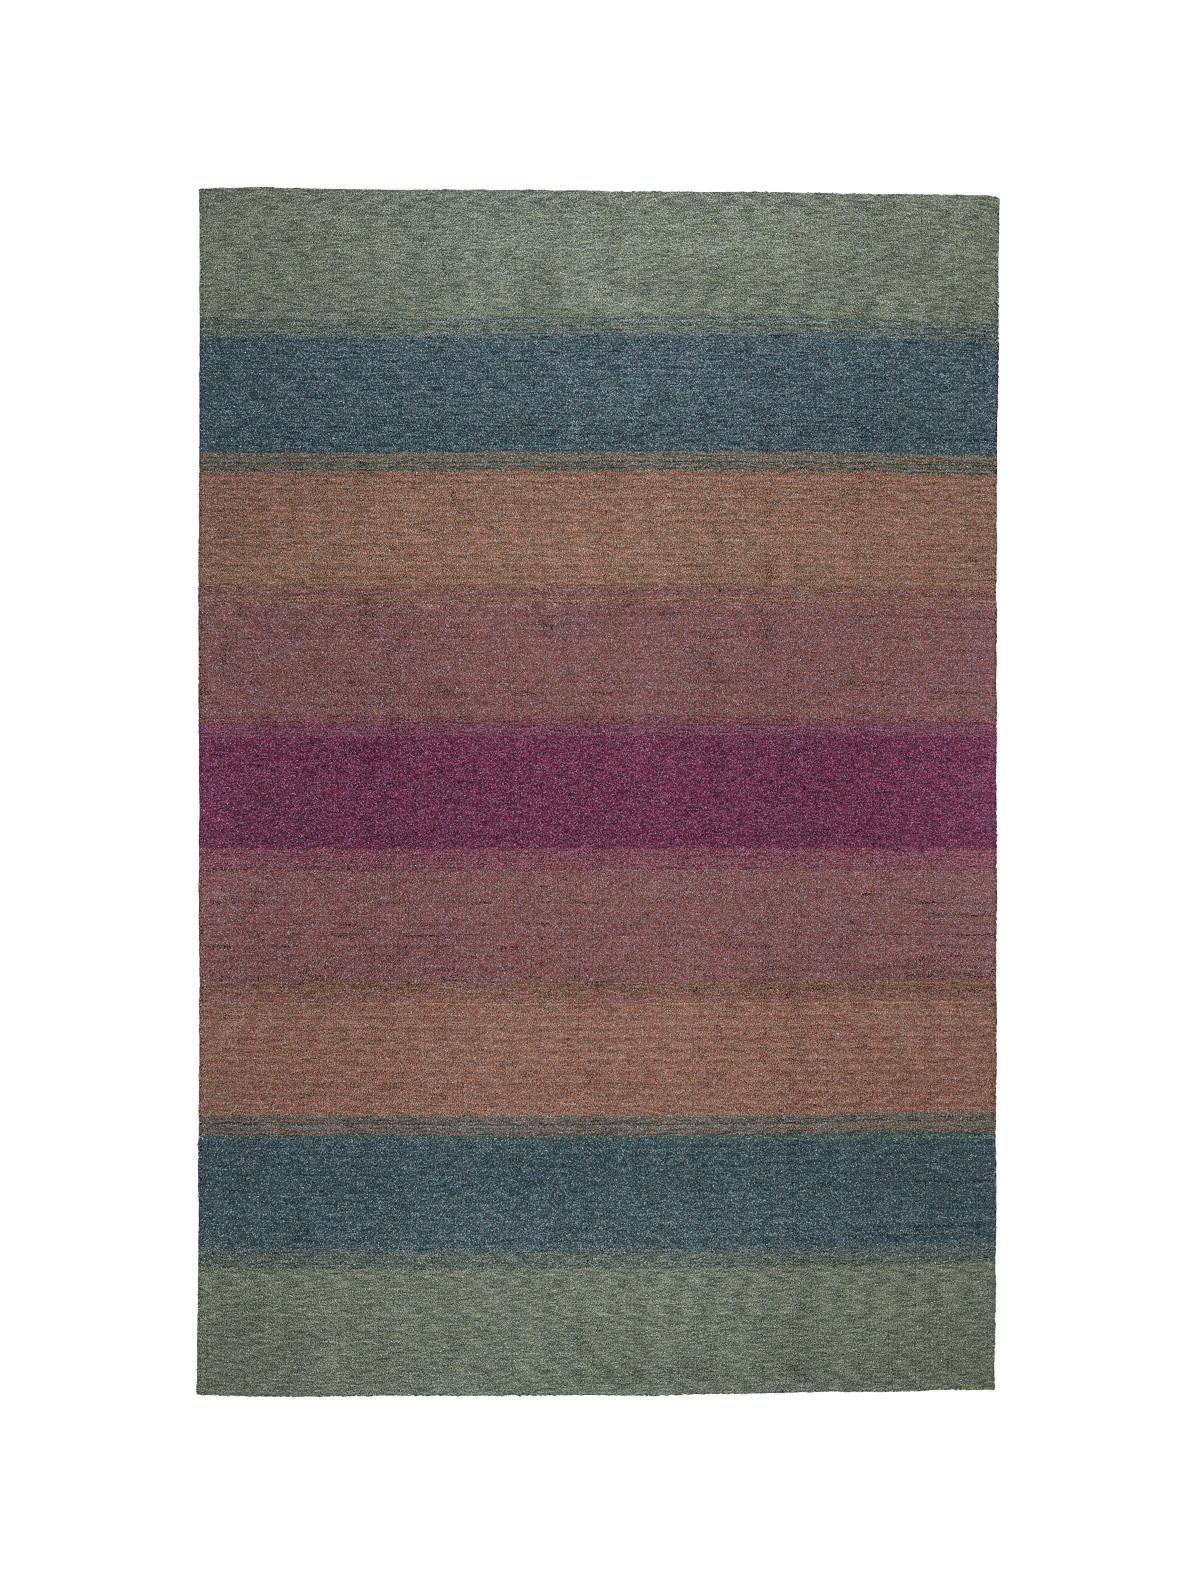 Gemeinsam mit Marco De Vincenzo beschloss cc-tapis, sich der Herausforderung zu stellen, seine ikonischen Lurex-Textilien in einen Teppich zu verwandeln.
 
Lurex ist ein MATERIAL, das in der Welt der Teppichherstellung sehr selten verwendet wird und